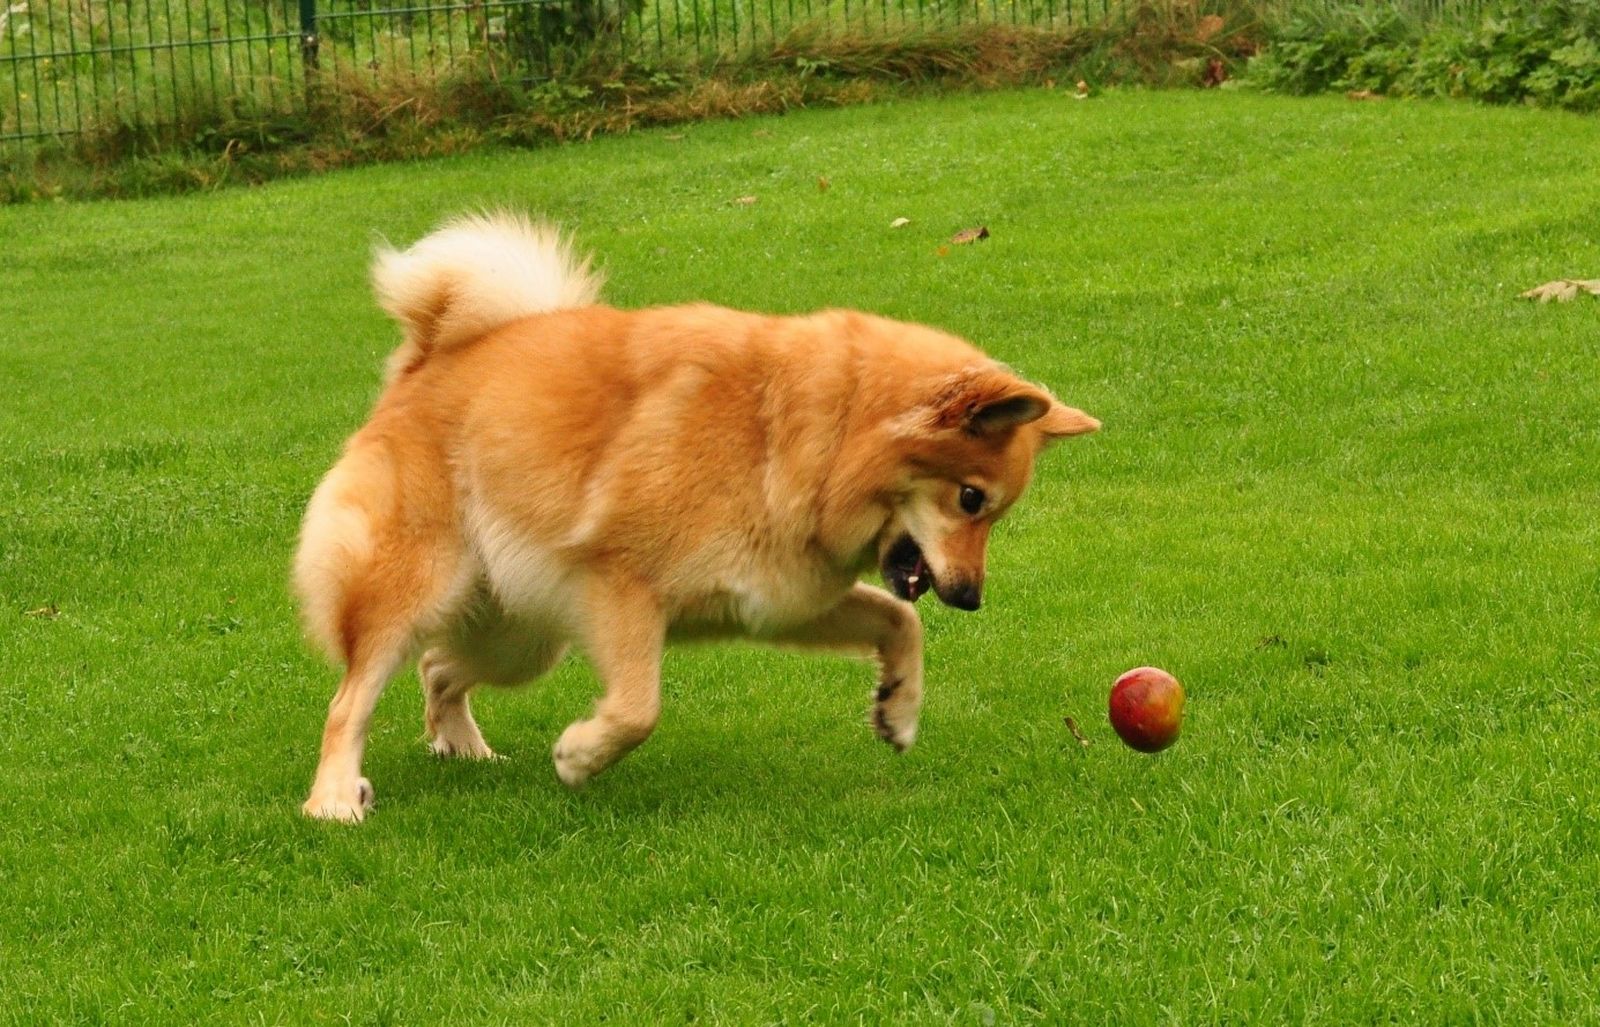 Ein rotbrauner spitzähnlicher Hund spielt mit einem Apfel ausgelassen auf einer Wiese